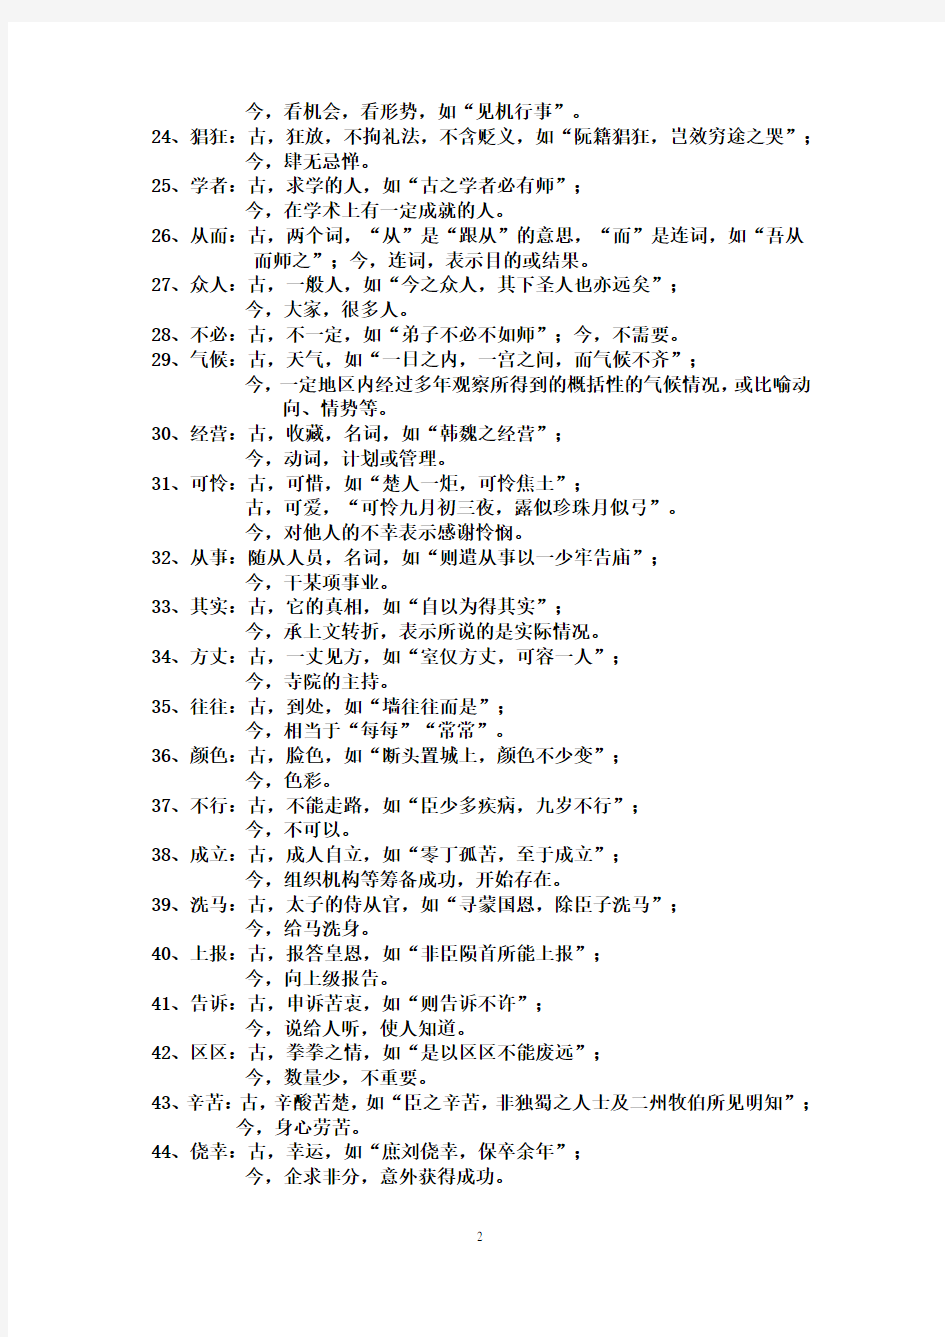 完整word版,古代汉语中的古今异义词语汇总,推荐文档